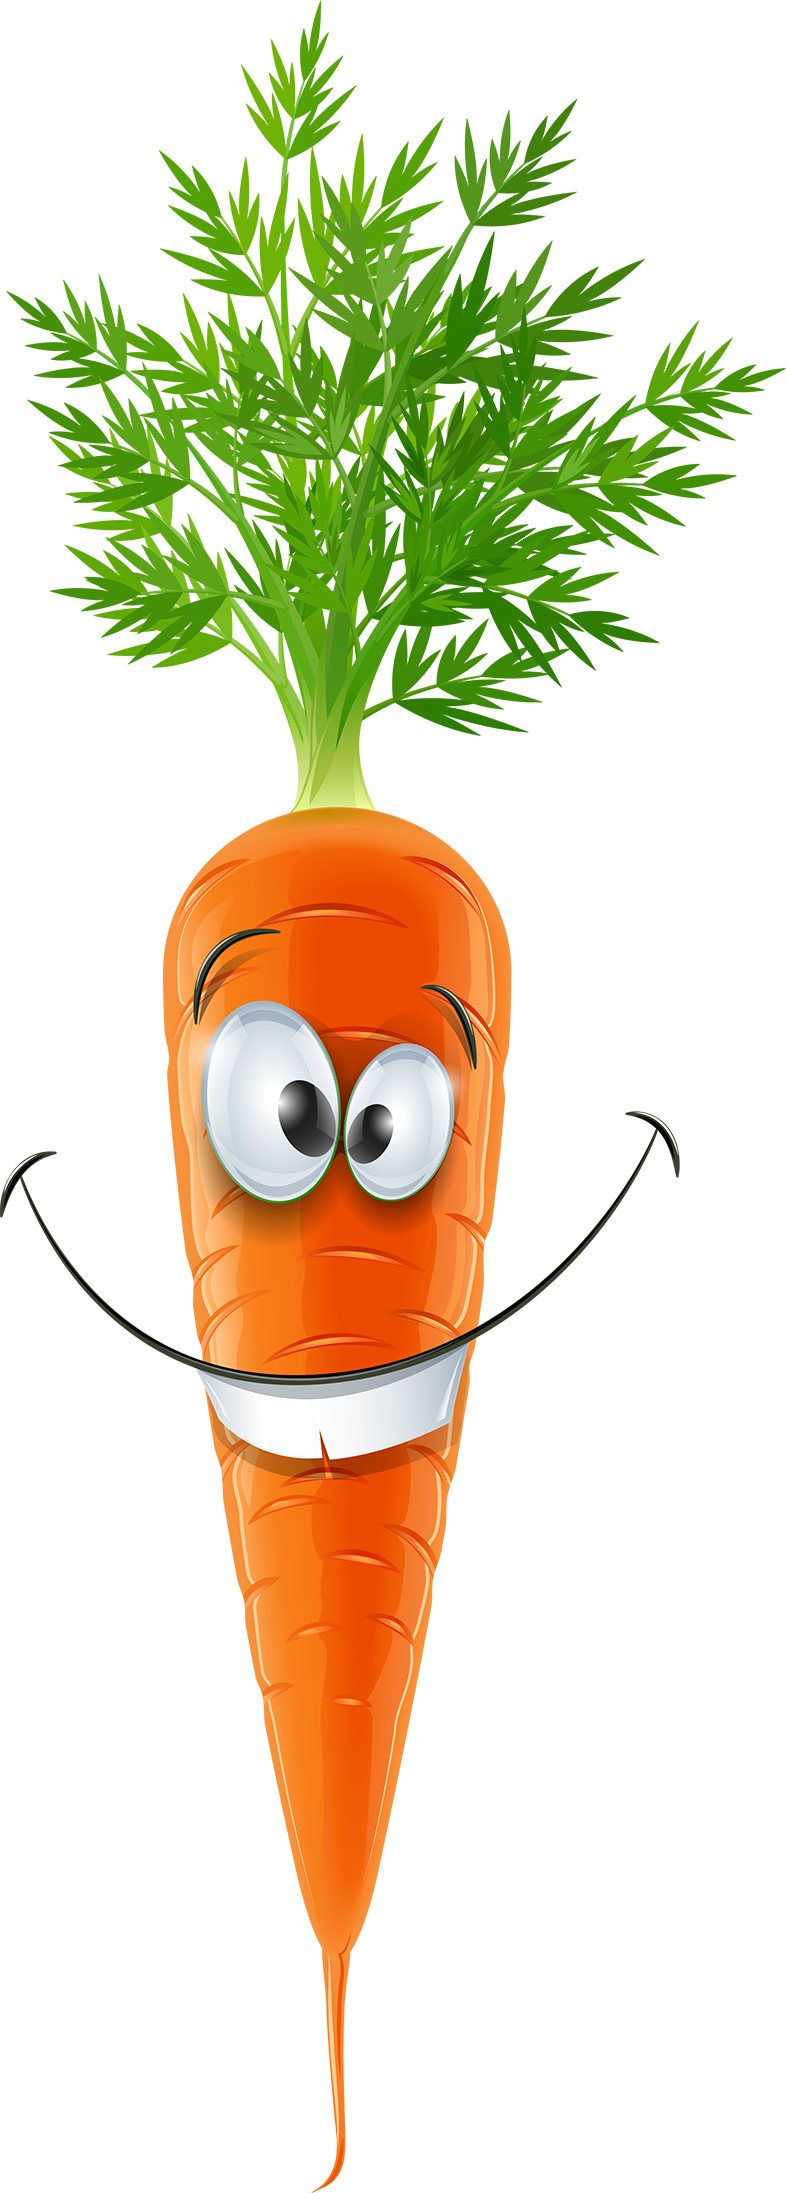 Морковь картинка на белом фоне для детей